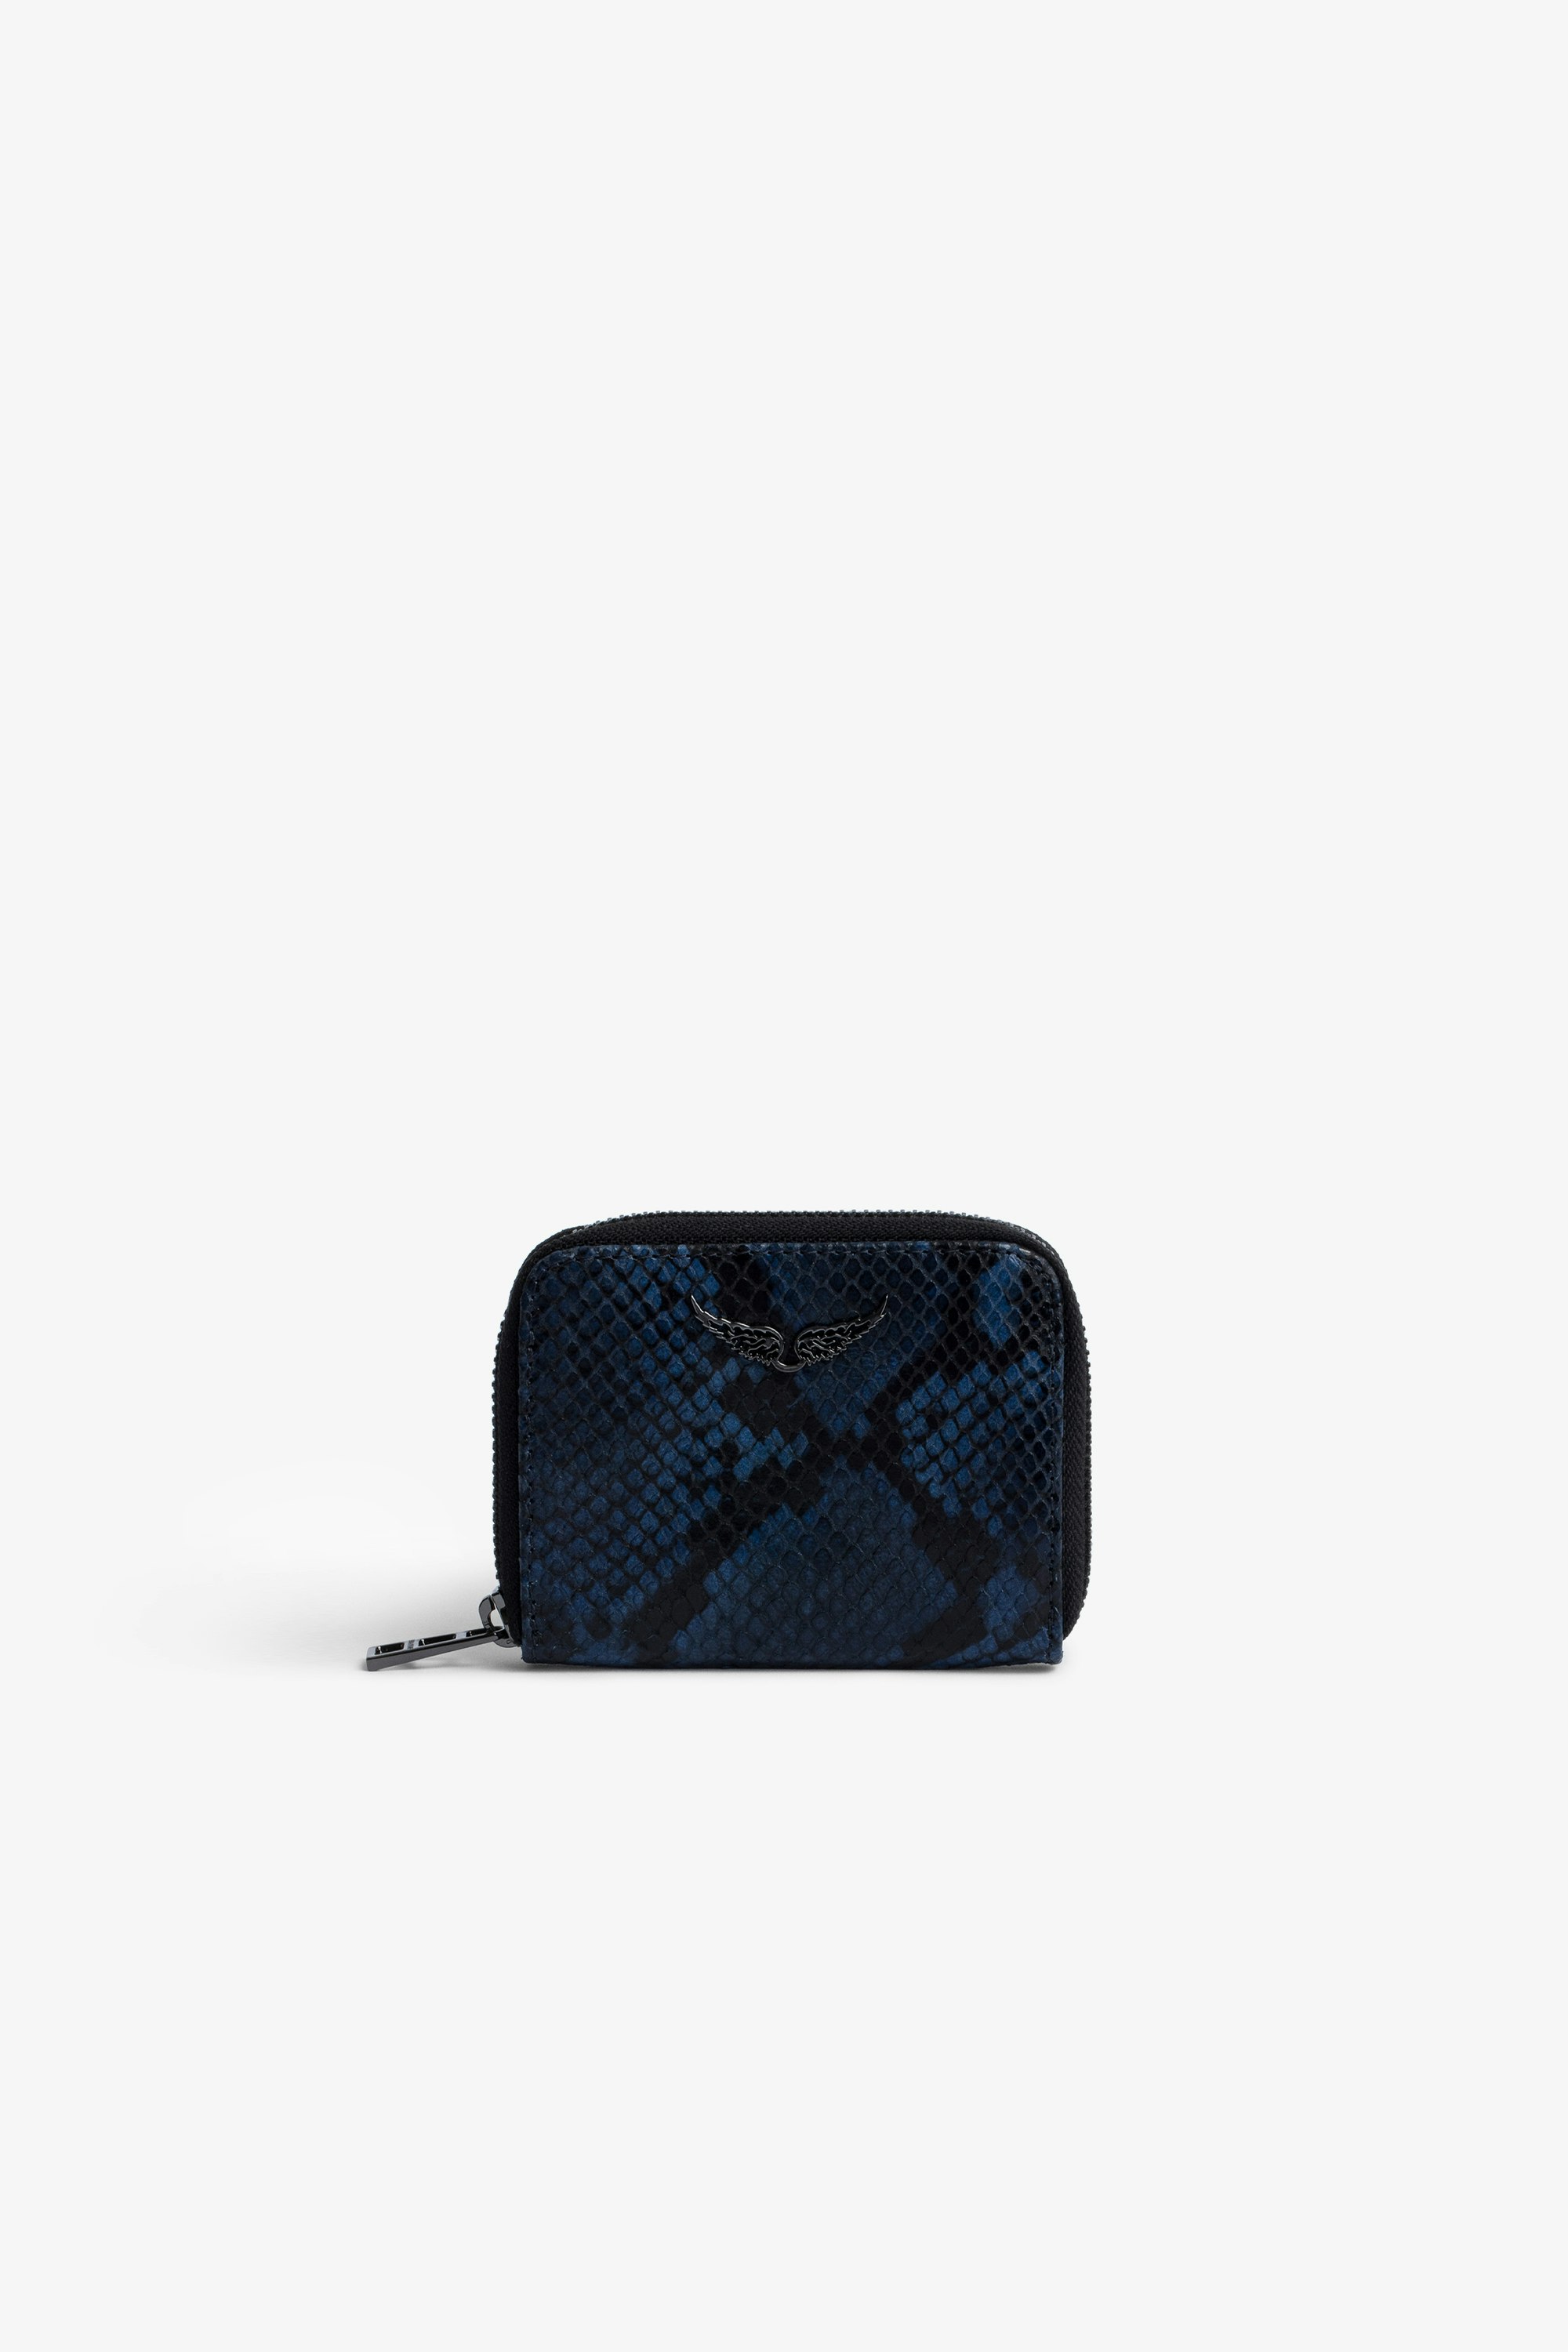 Monedero Mini ZV Monedero de piel azul y negra con efecto de serpiente para mujer